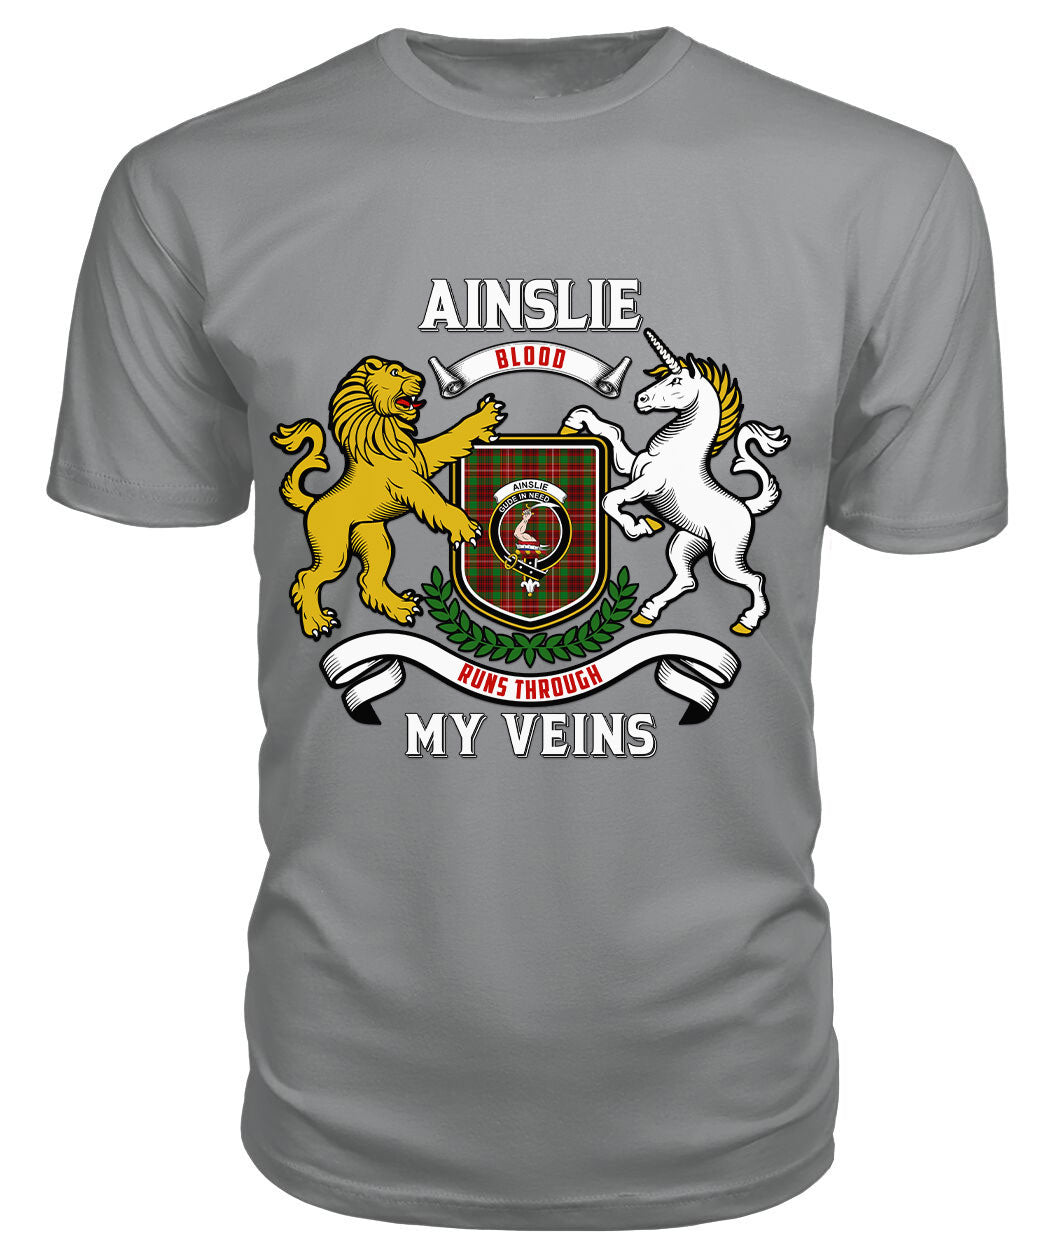 Ainslie Tartan Crest 2D T-shirt - Blood Runs Through My Veins Style